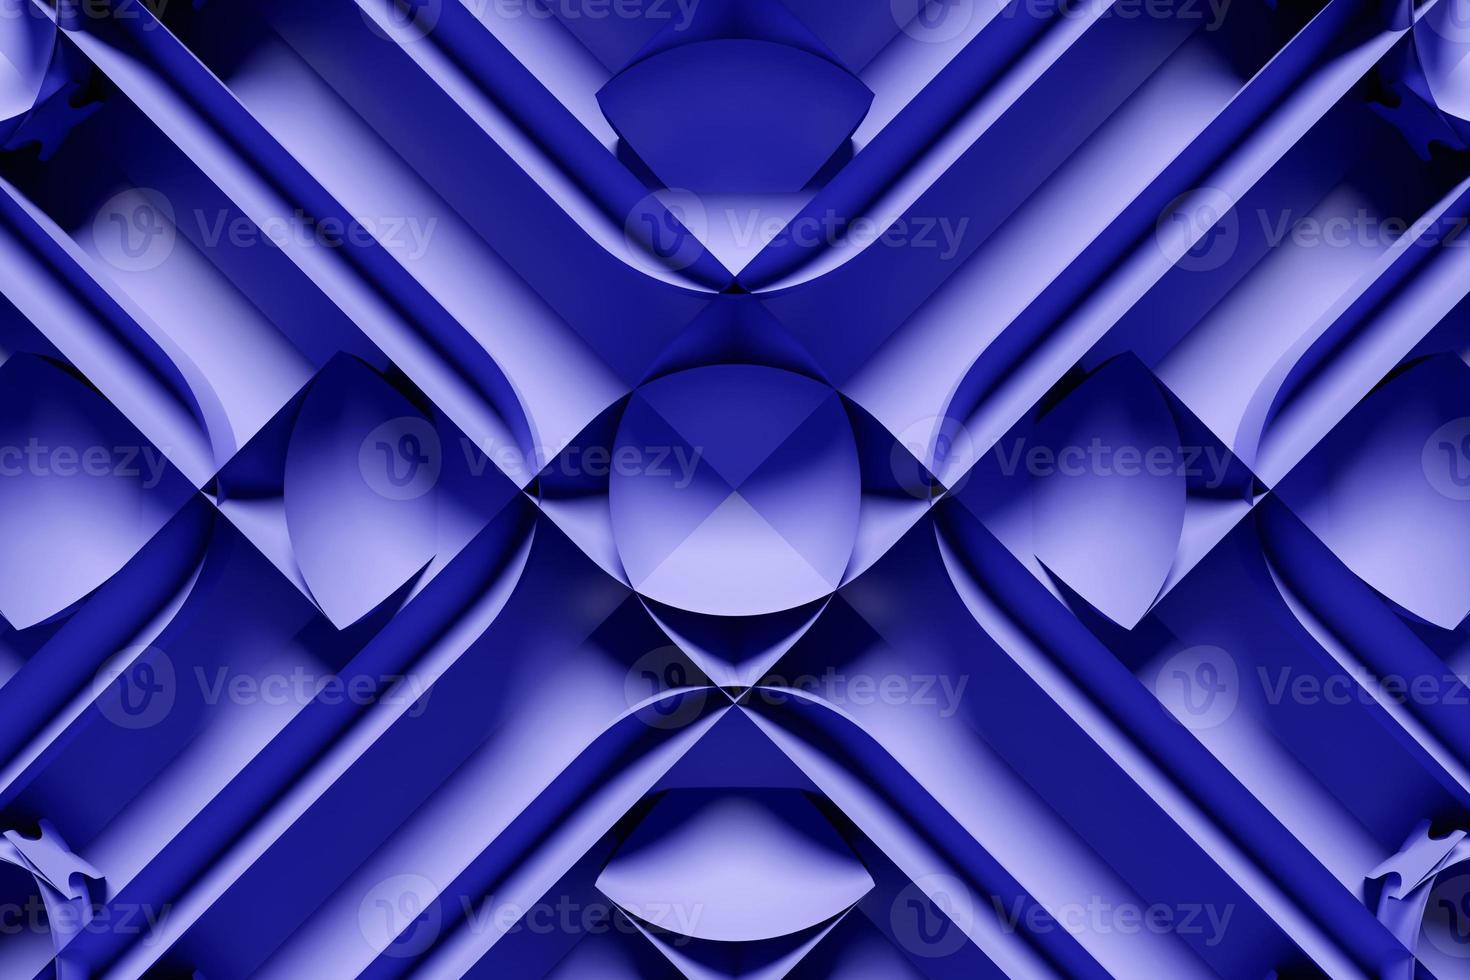 3D-Darstellung eines lila abstrakten Hintergrunds mit geometrischen Linien. moderne grafische Textur. Geometrisches Muster. foto